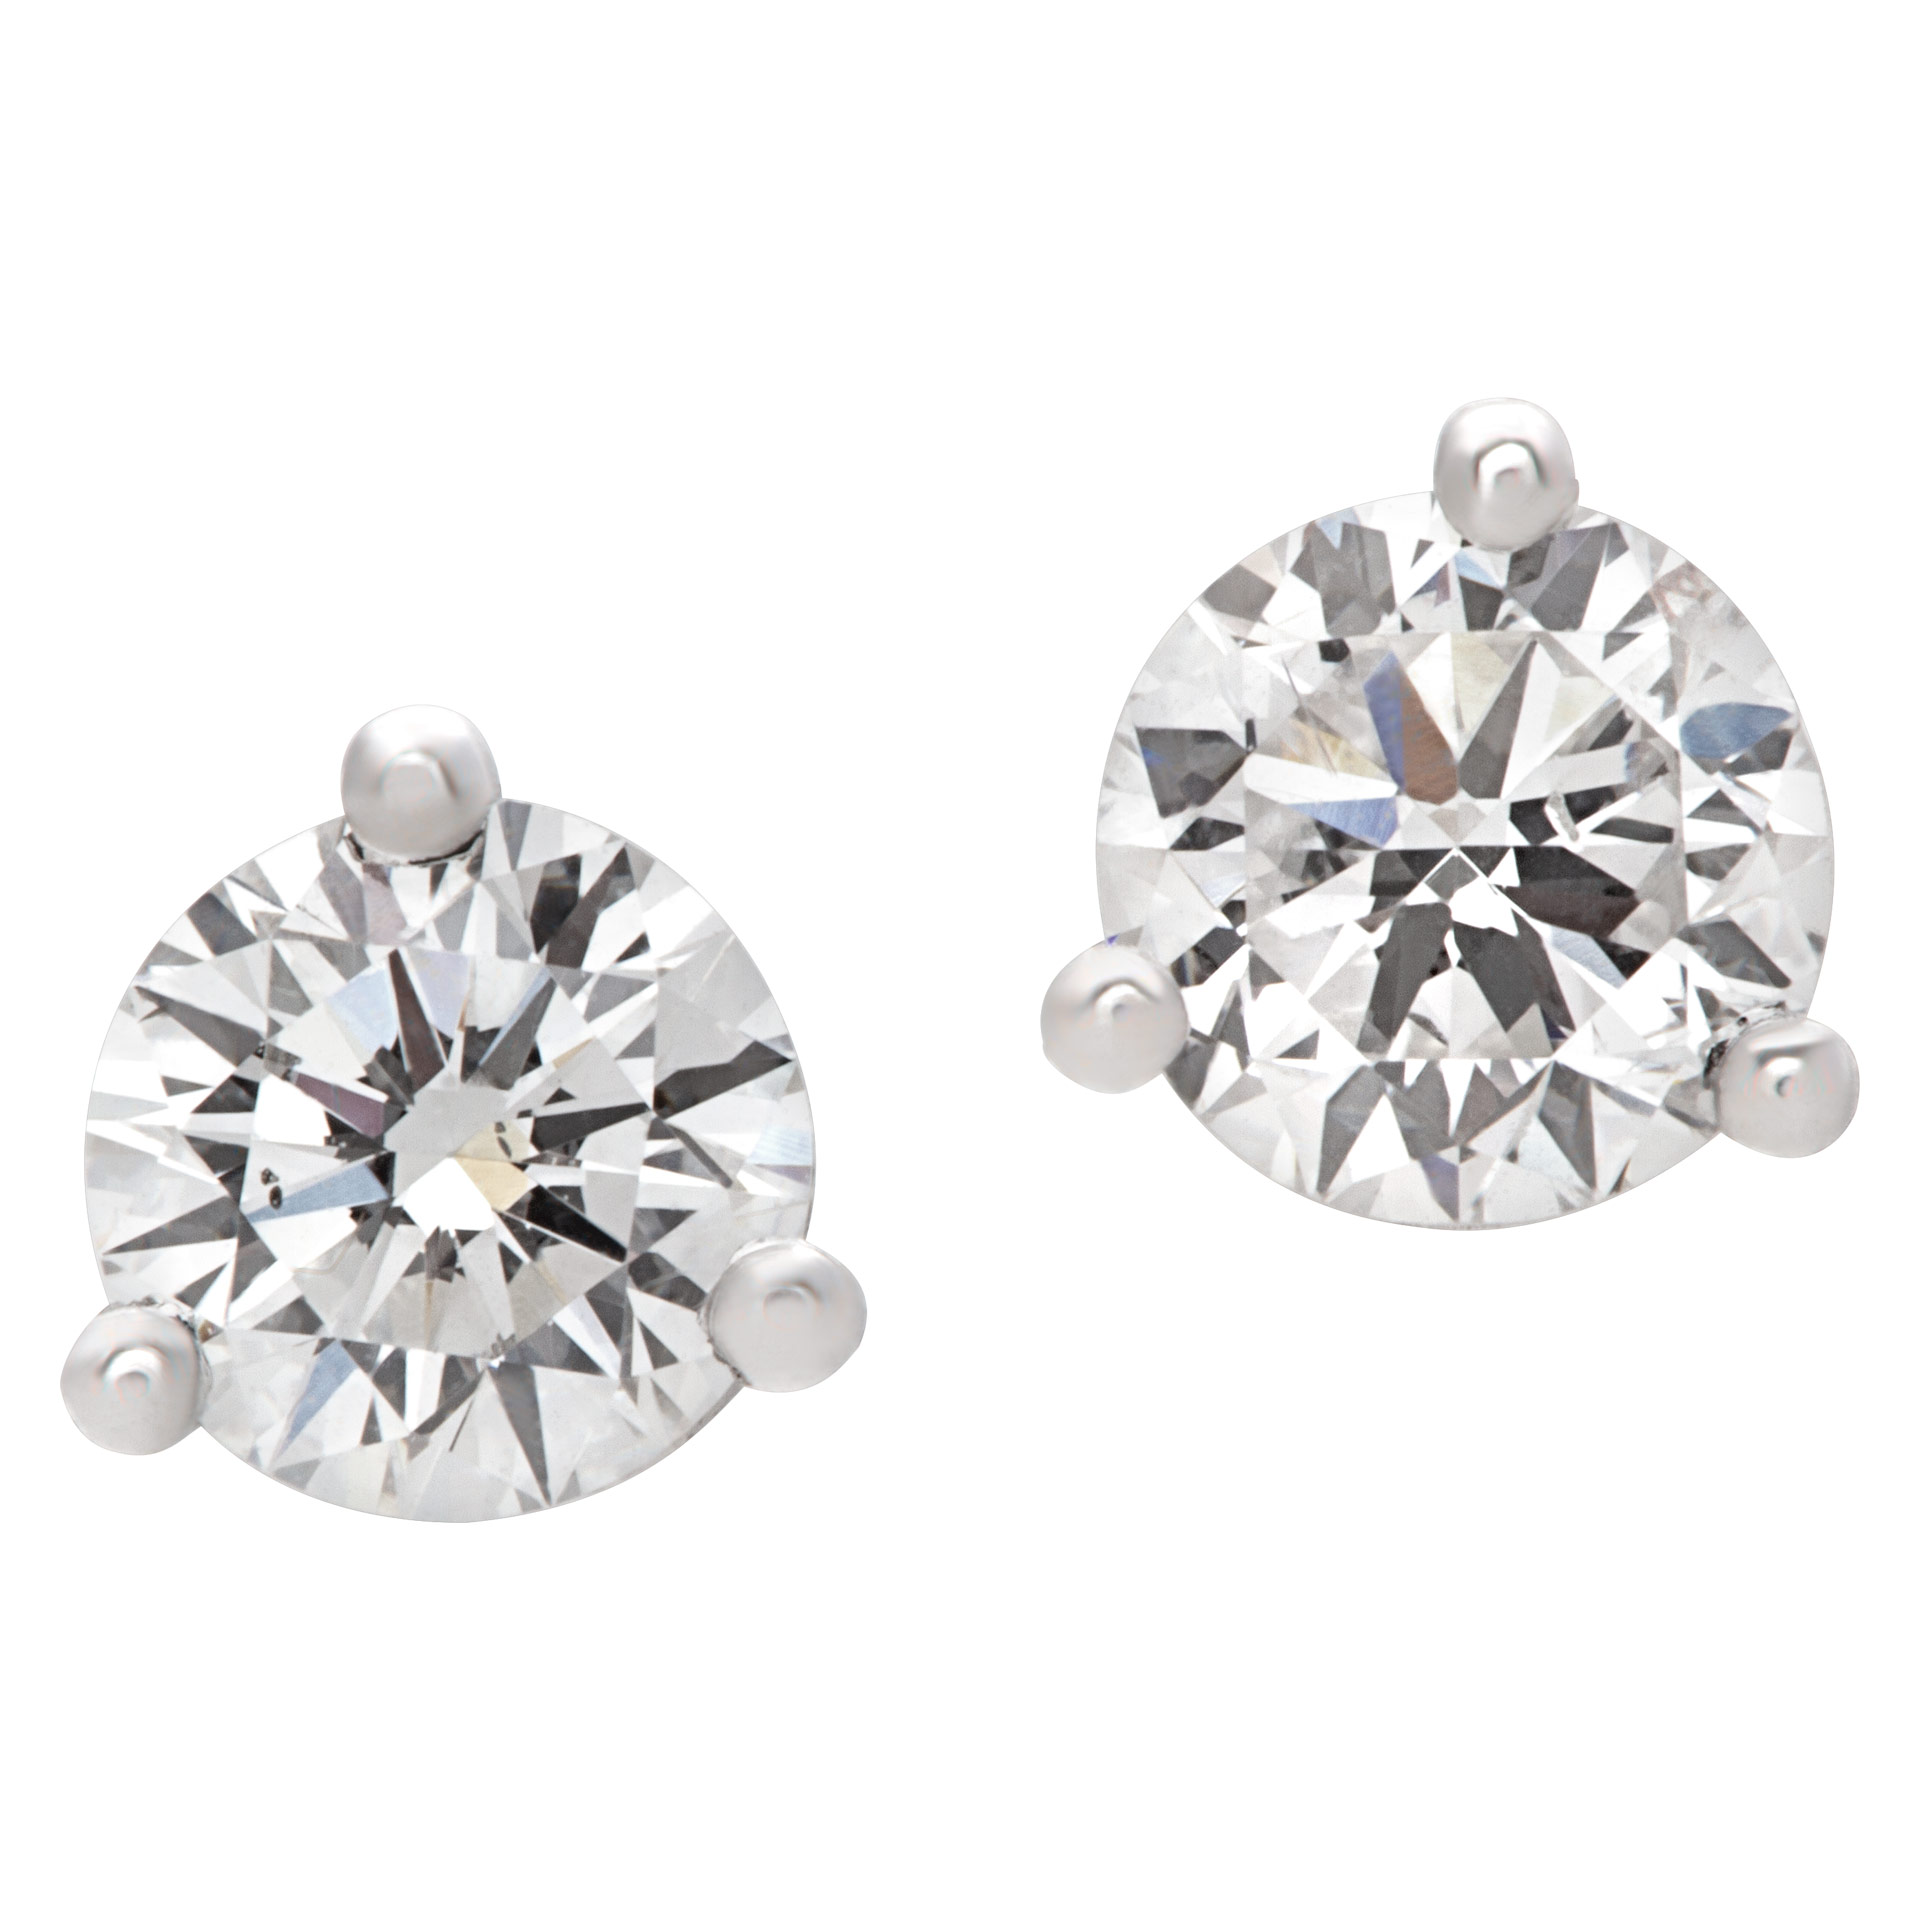 GIA certified diamond studs 0.32 carat (E color, SI1 clarity) and 0.35 carat (F color, SI2 clarity)